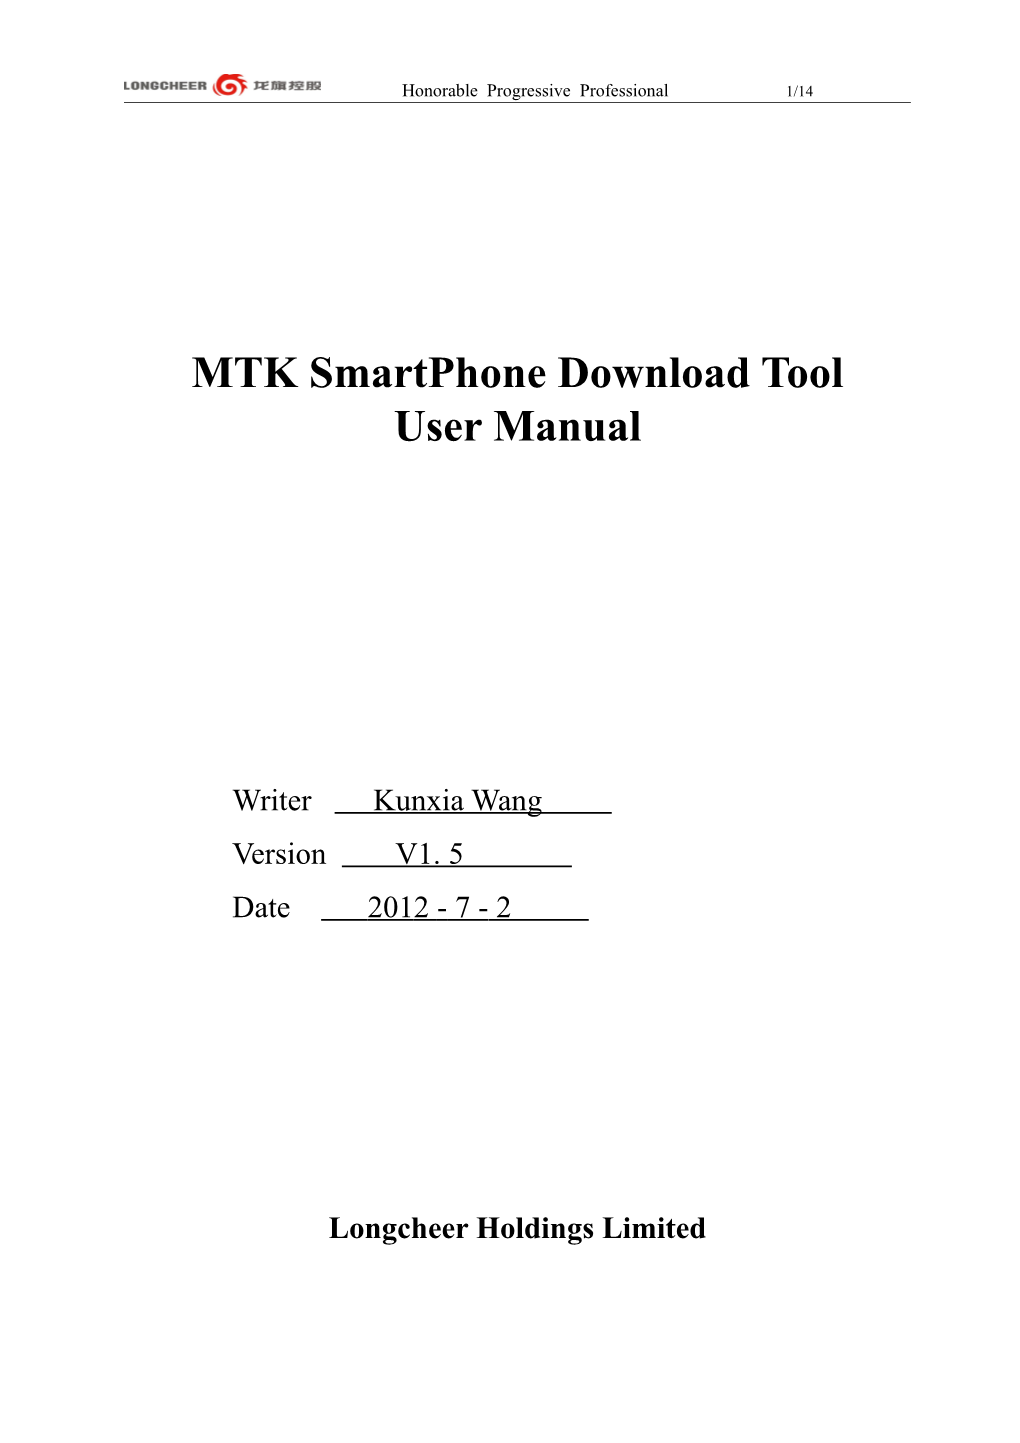 MTK Smartphone Download Tool